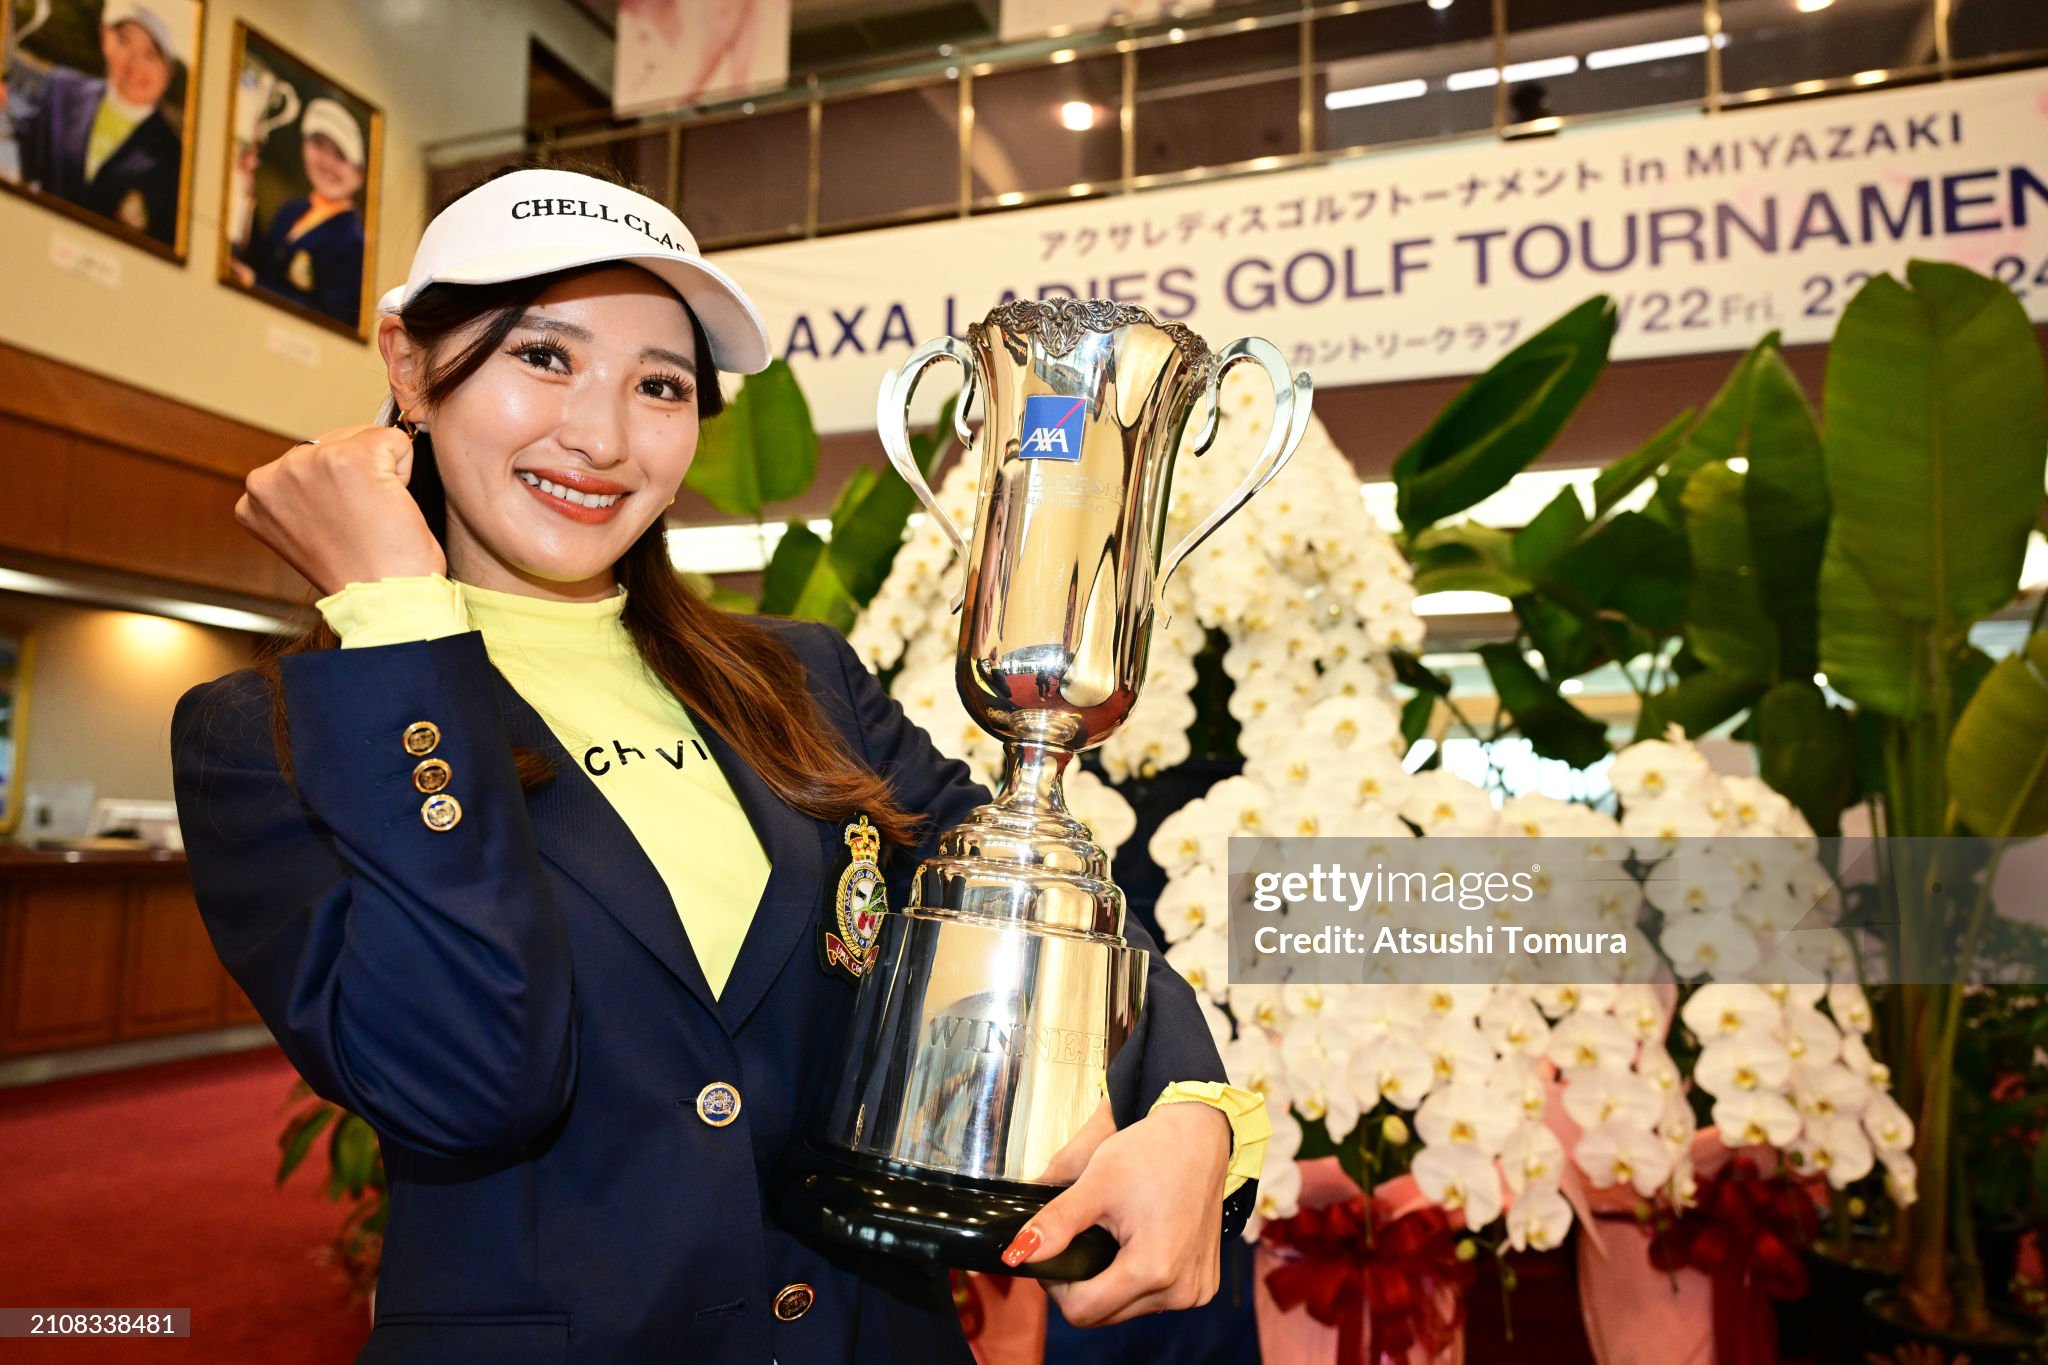 https://media.gettyimages.com/id/2108338481/photo/axa-ladies-golf-tournament-in-miyazaki-final-round.jpg?s=2048x2048&w=gi&k=20&c=9IypTk9epwwKPWRG7H66Aqy--xcihV_k3Krfr_dPoJU=